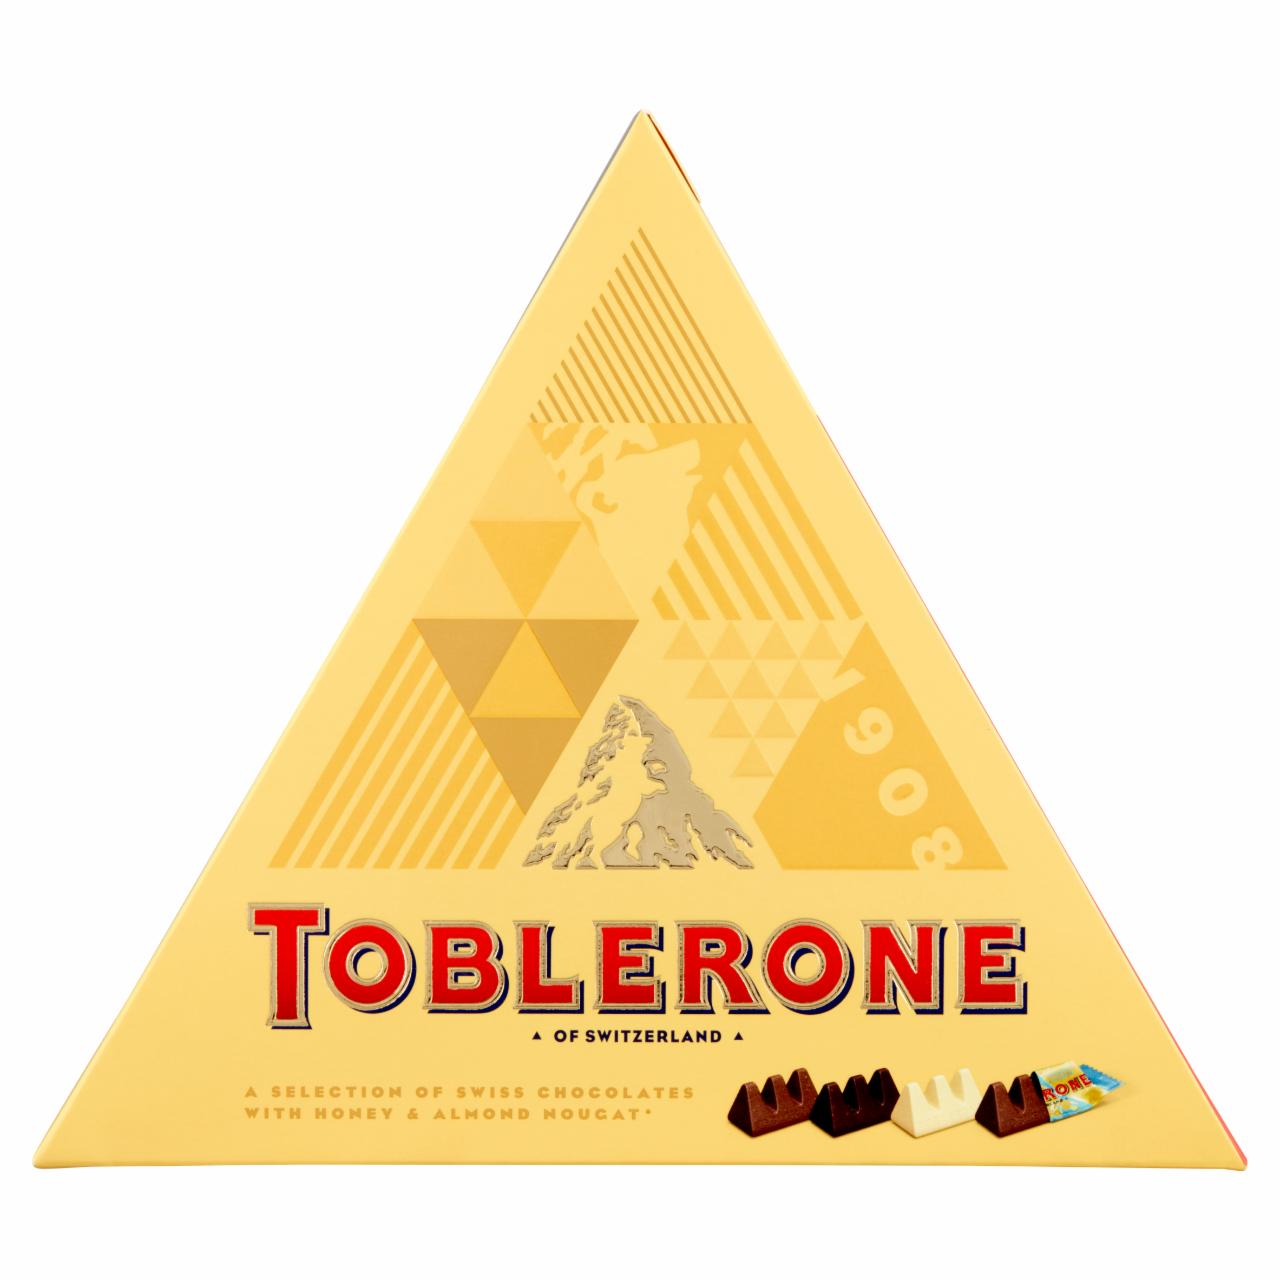 Képek - Toblerone svájci csokoládé válogatás 200 g